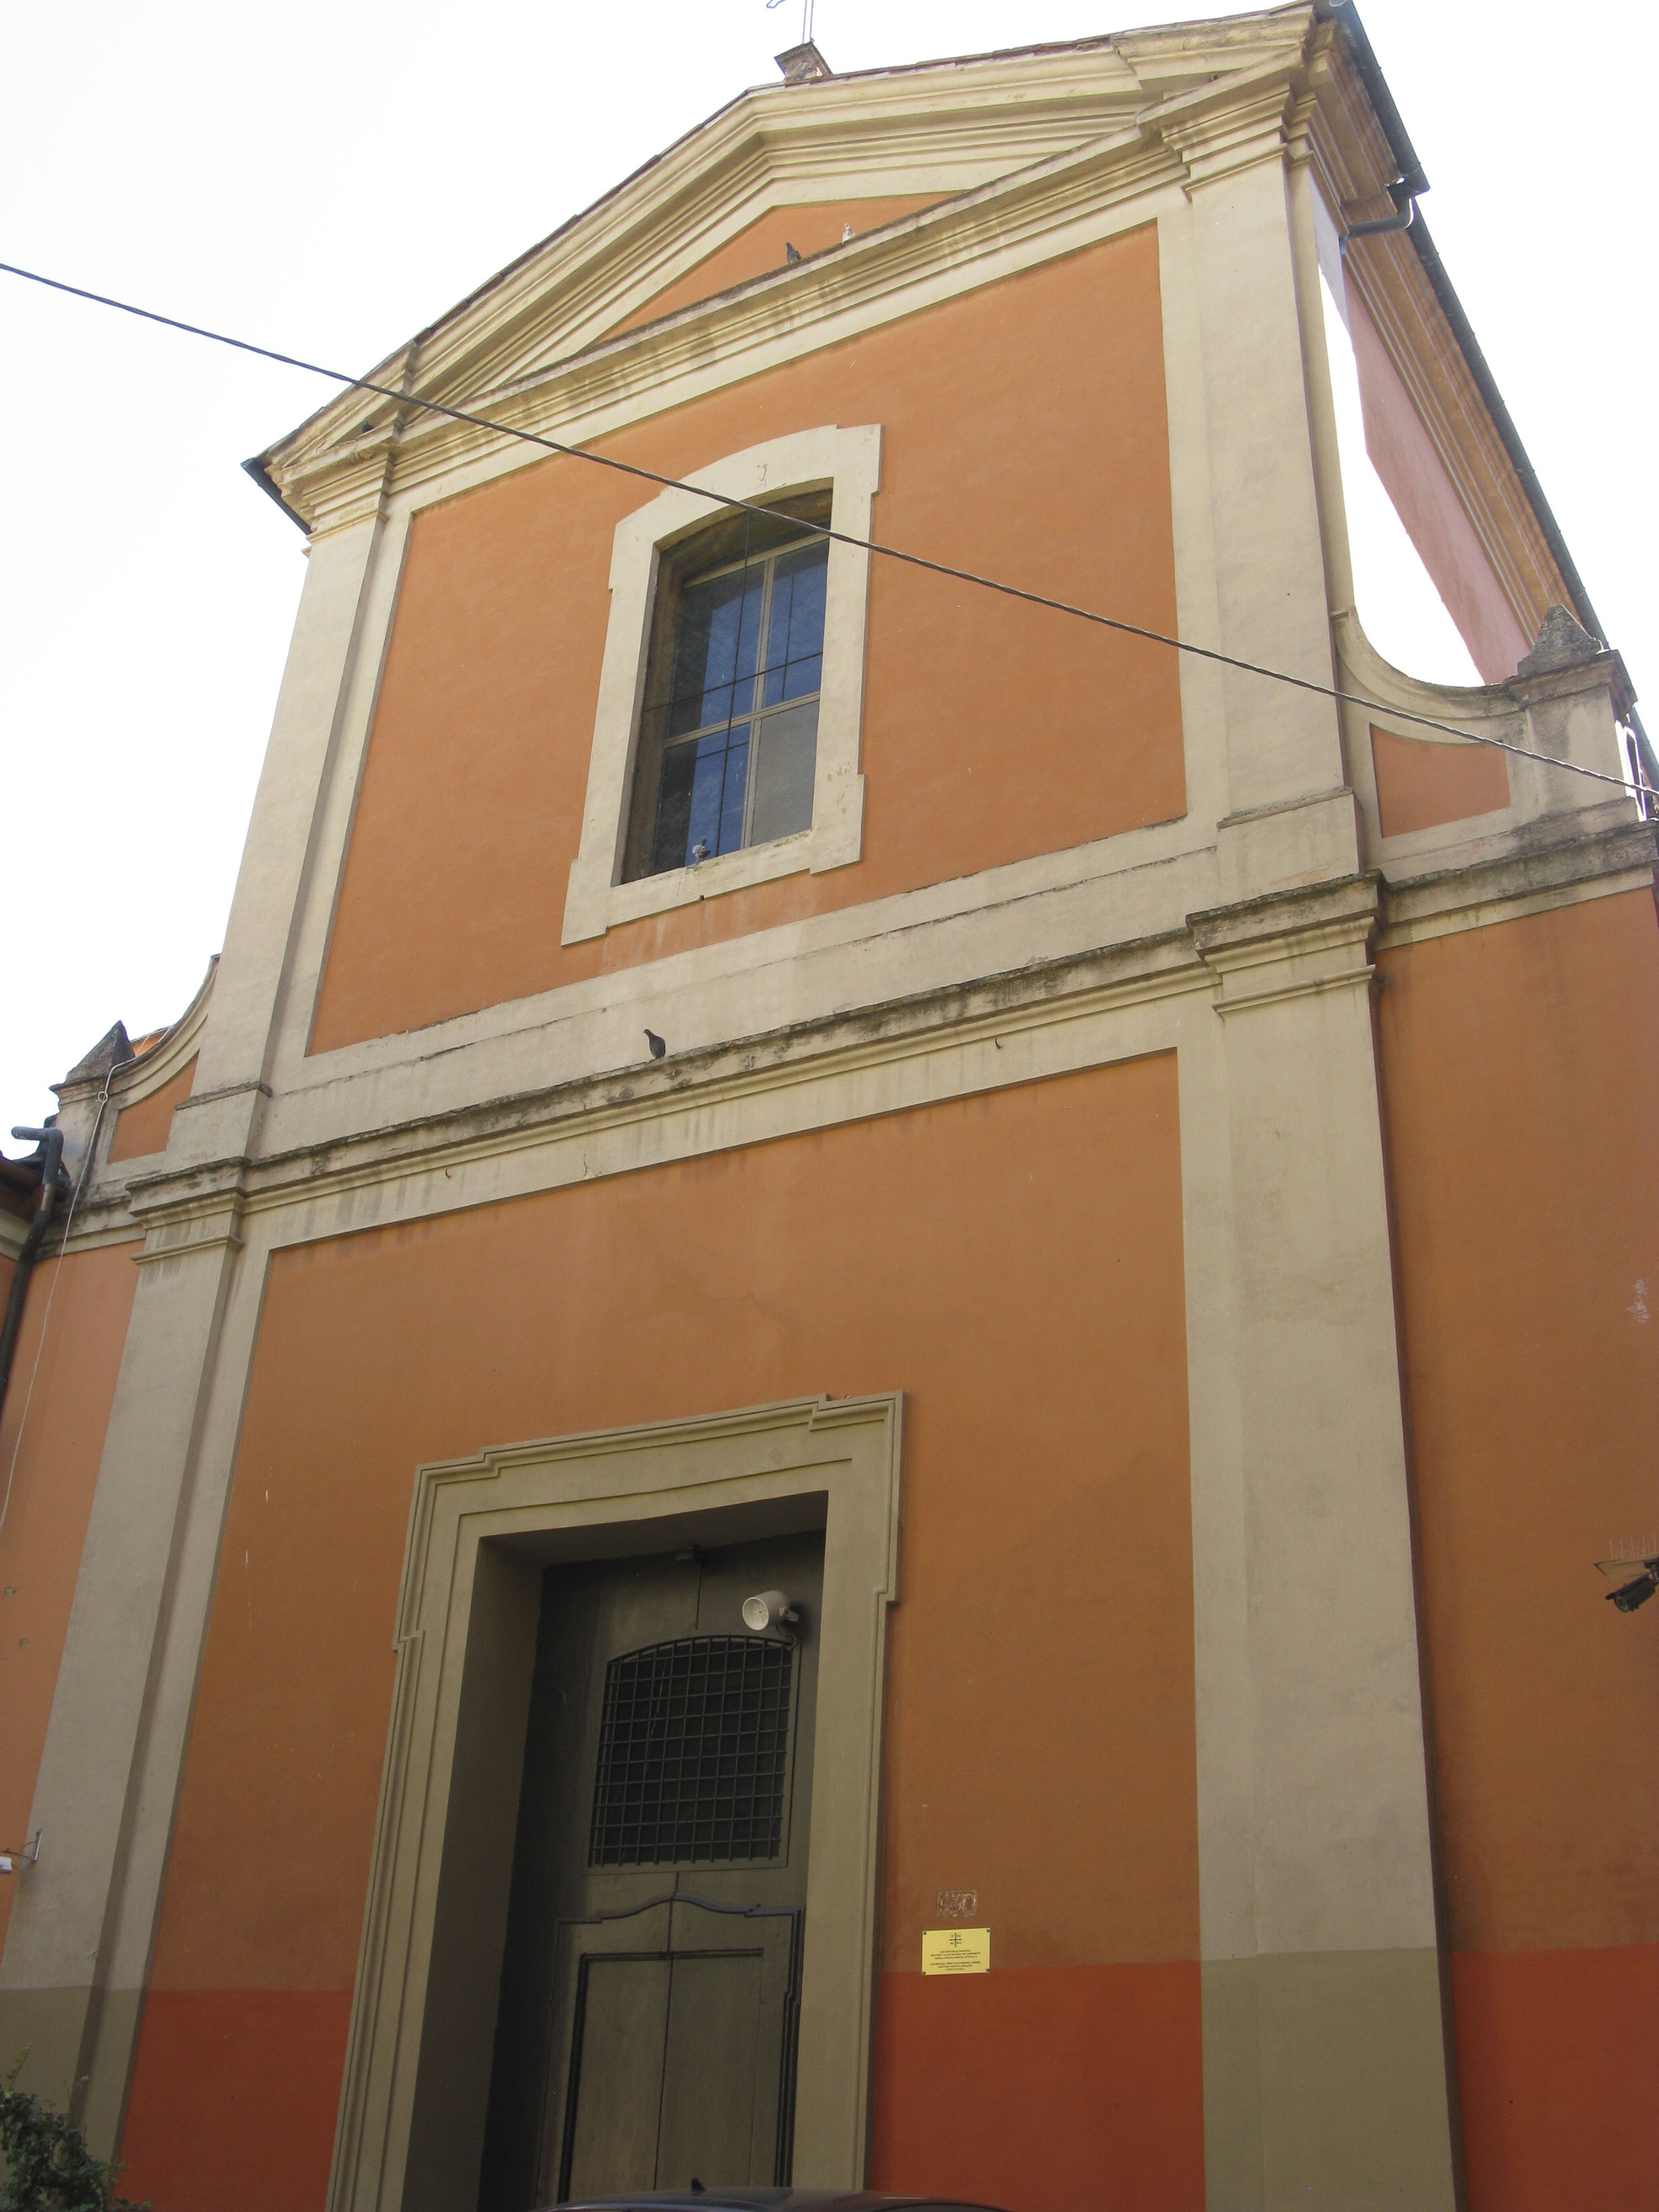 Chiesa di S. Maria de' Foscherari e canonica (chiesa) - Bologna (BO) 